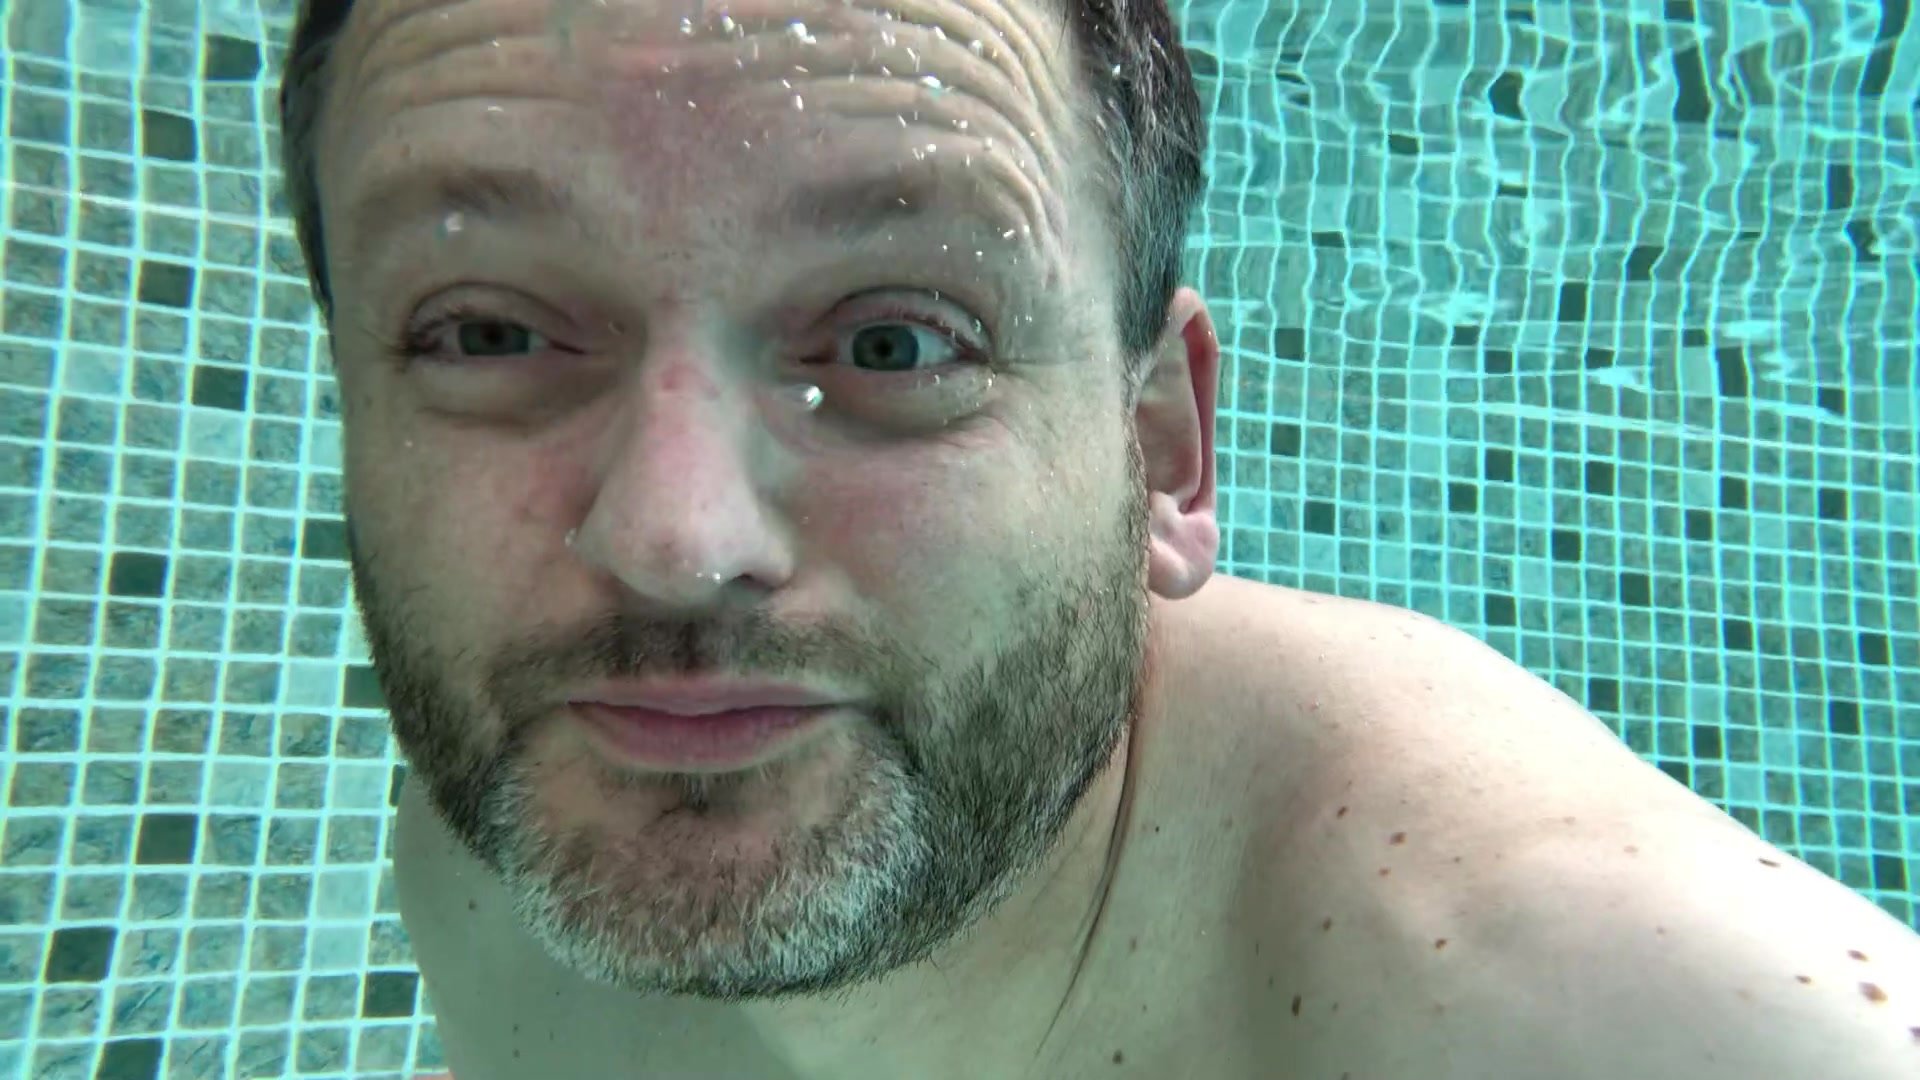 Barefaced bearded hottie blowing bubbles underwater